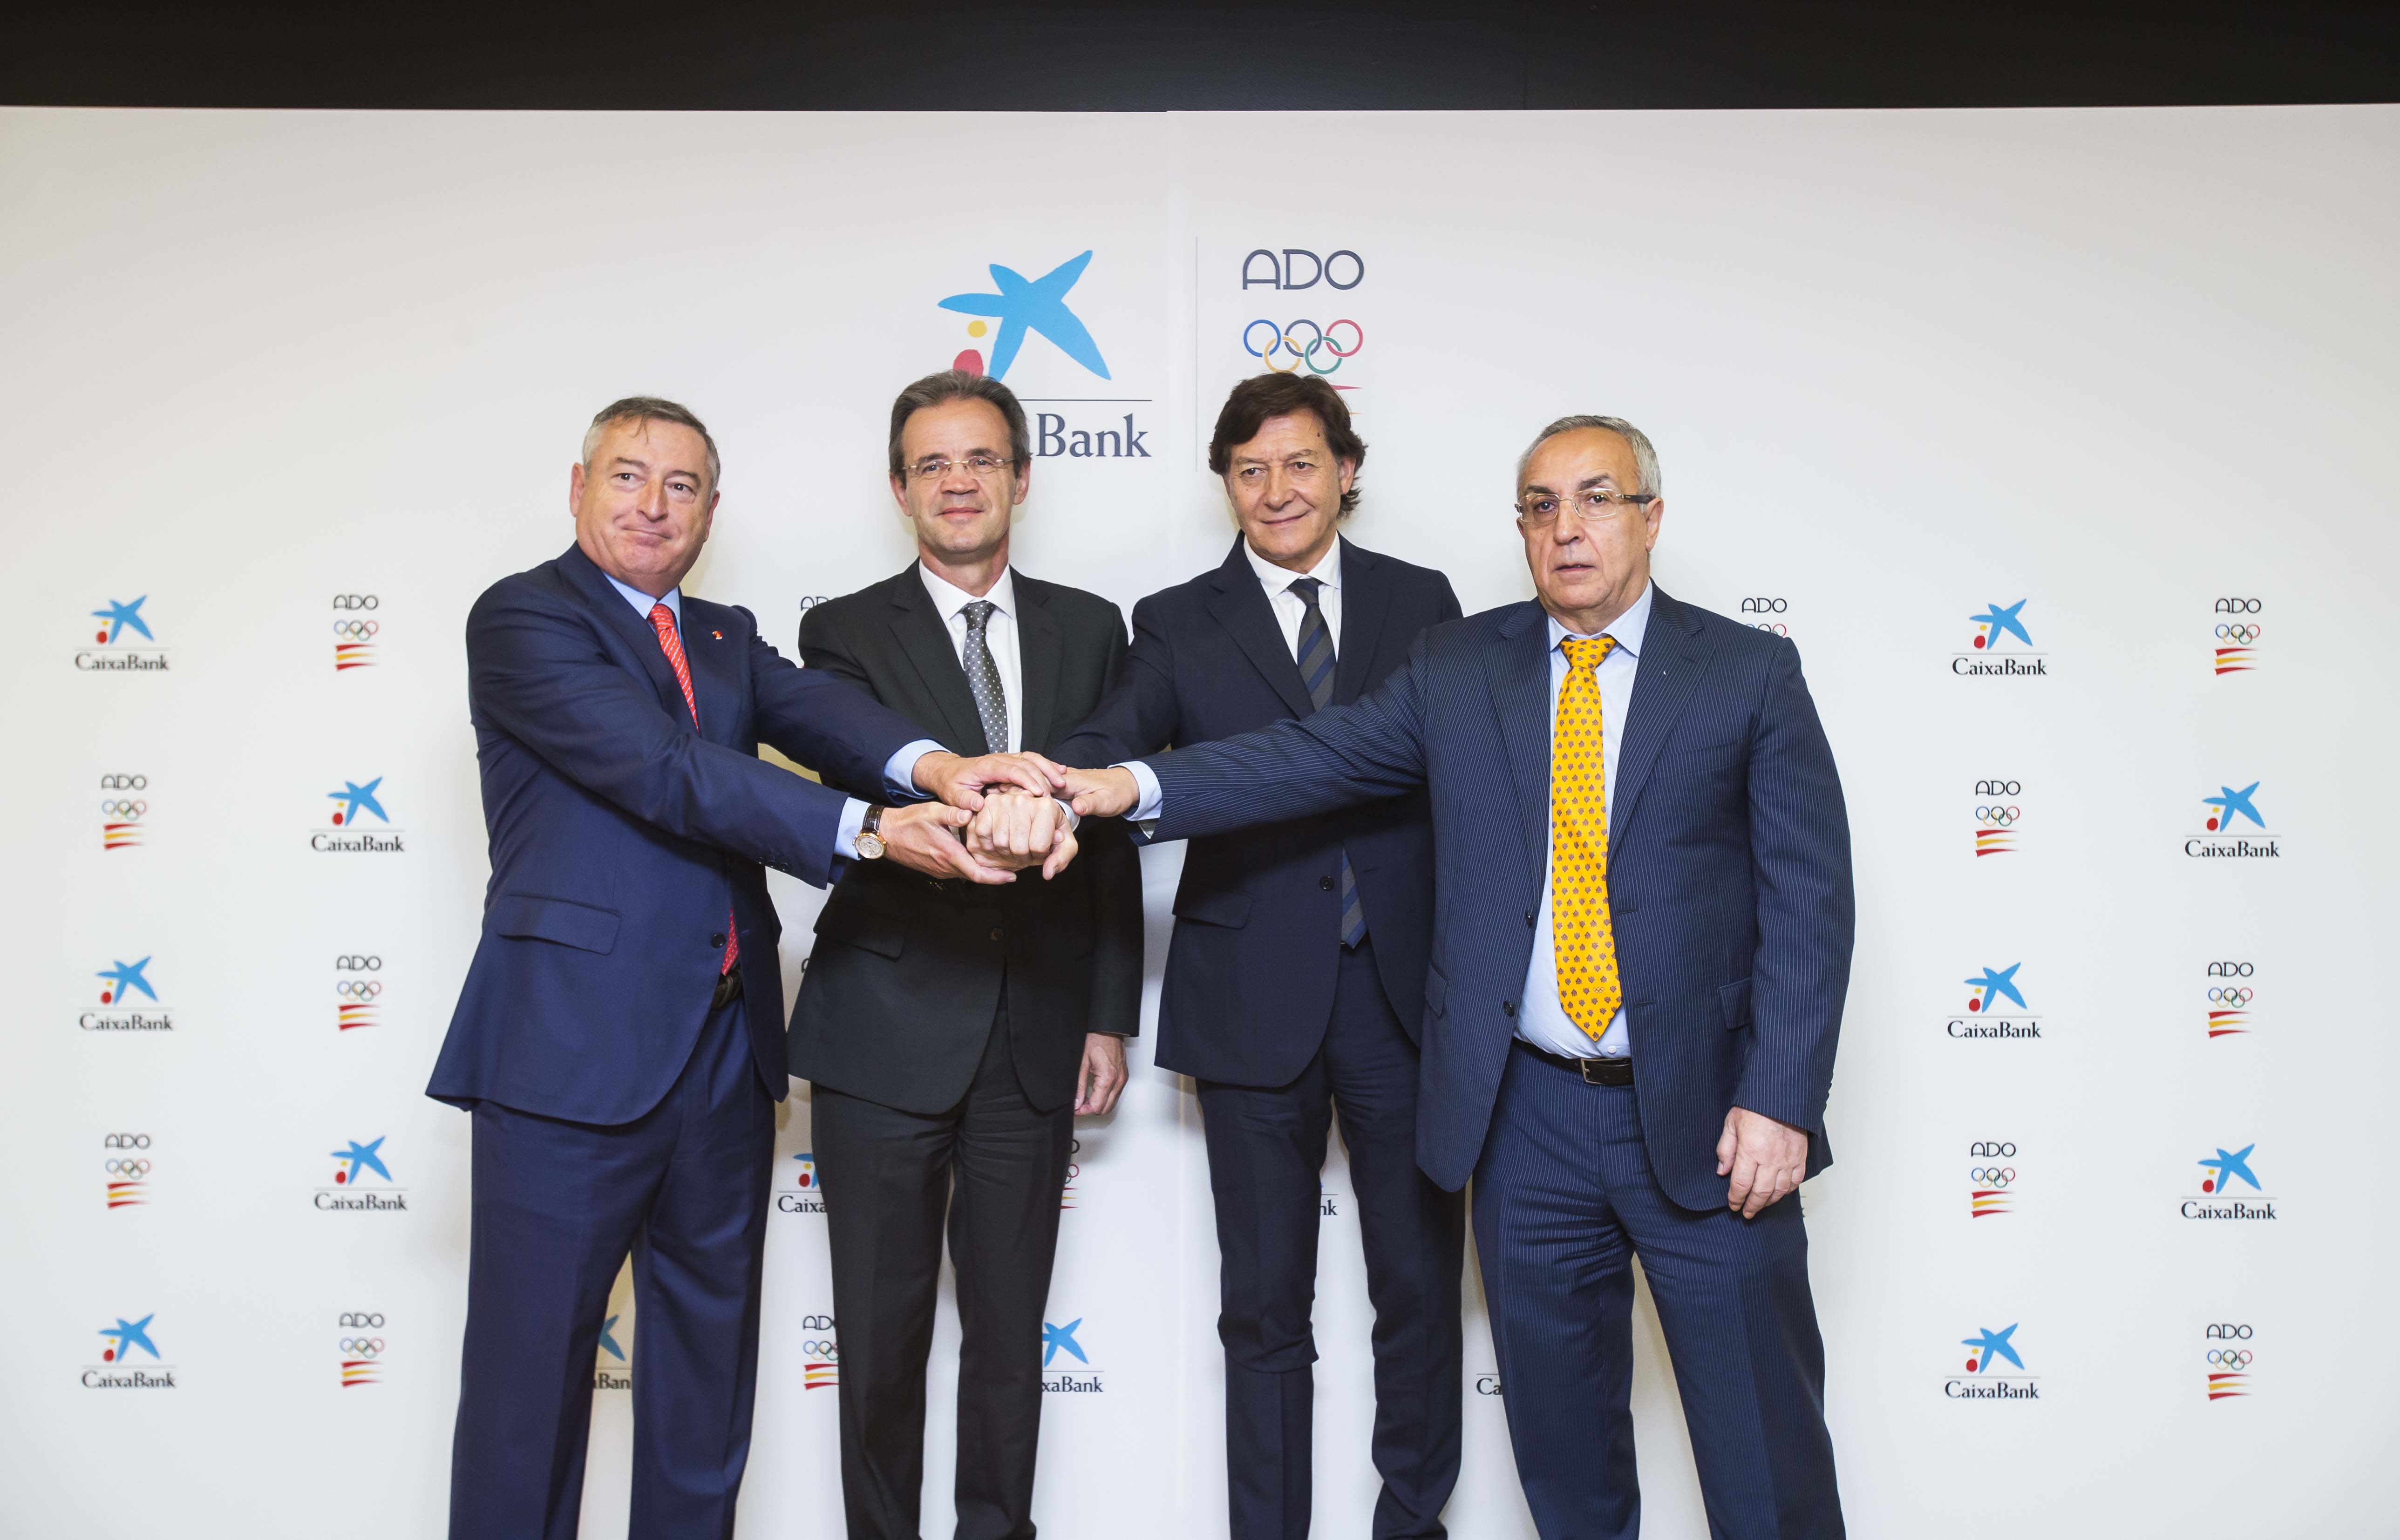 CaixaBank renueva el patrocinio del Plan ADO para el ciclo Tokio 2020